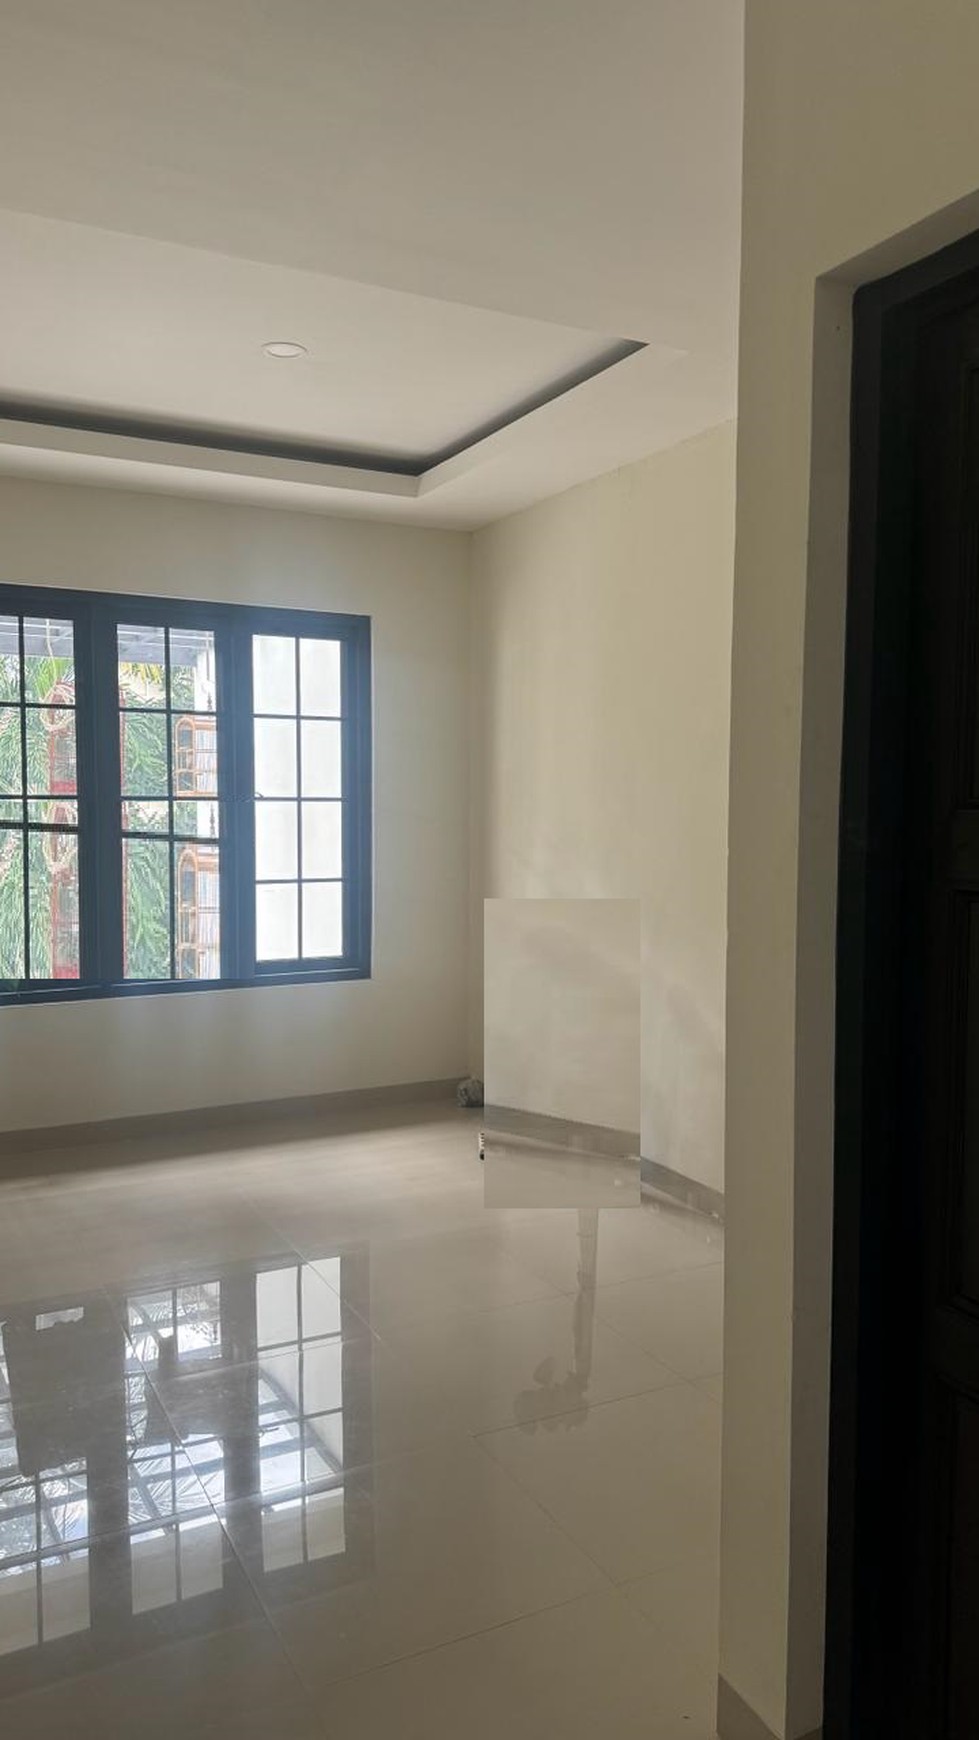 Rumah Brand New 2 Lantai Siap Huni di Graha Bintaro